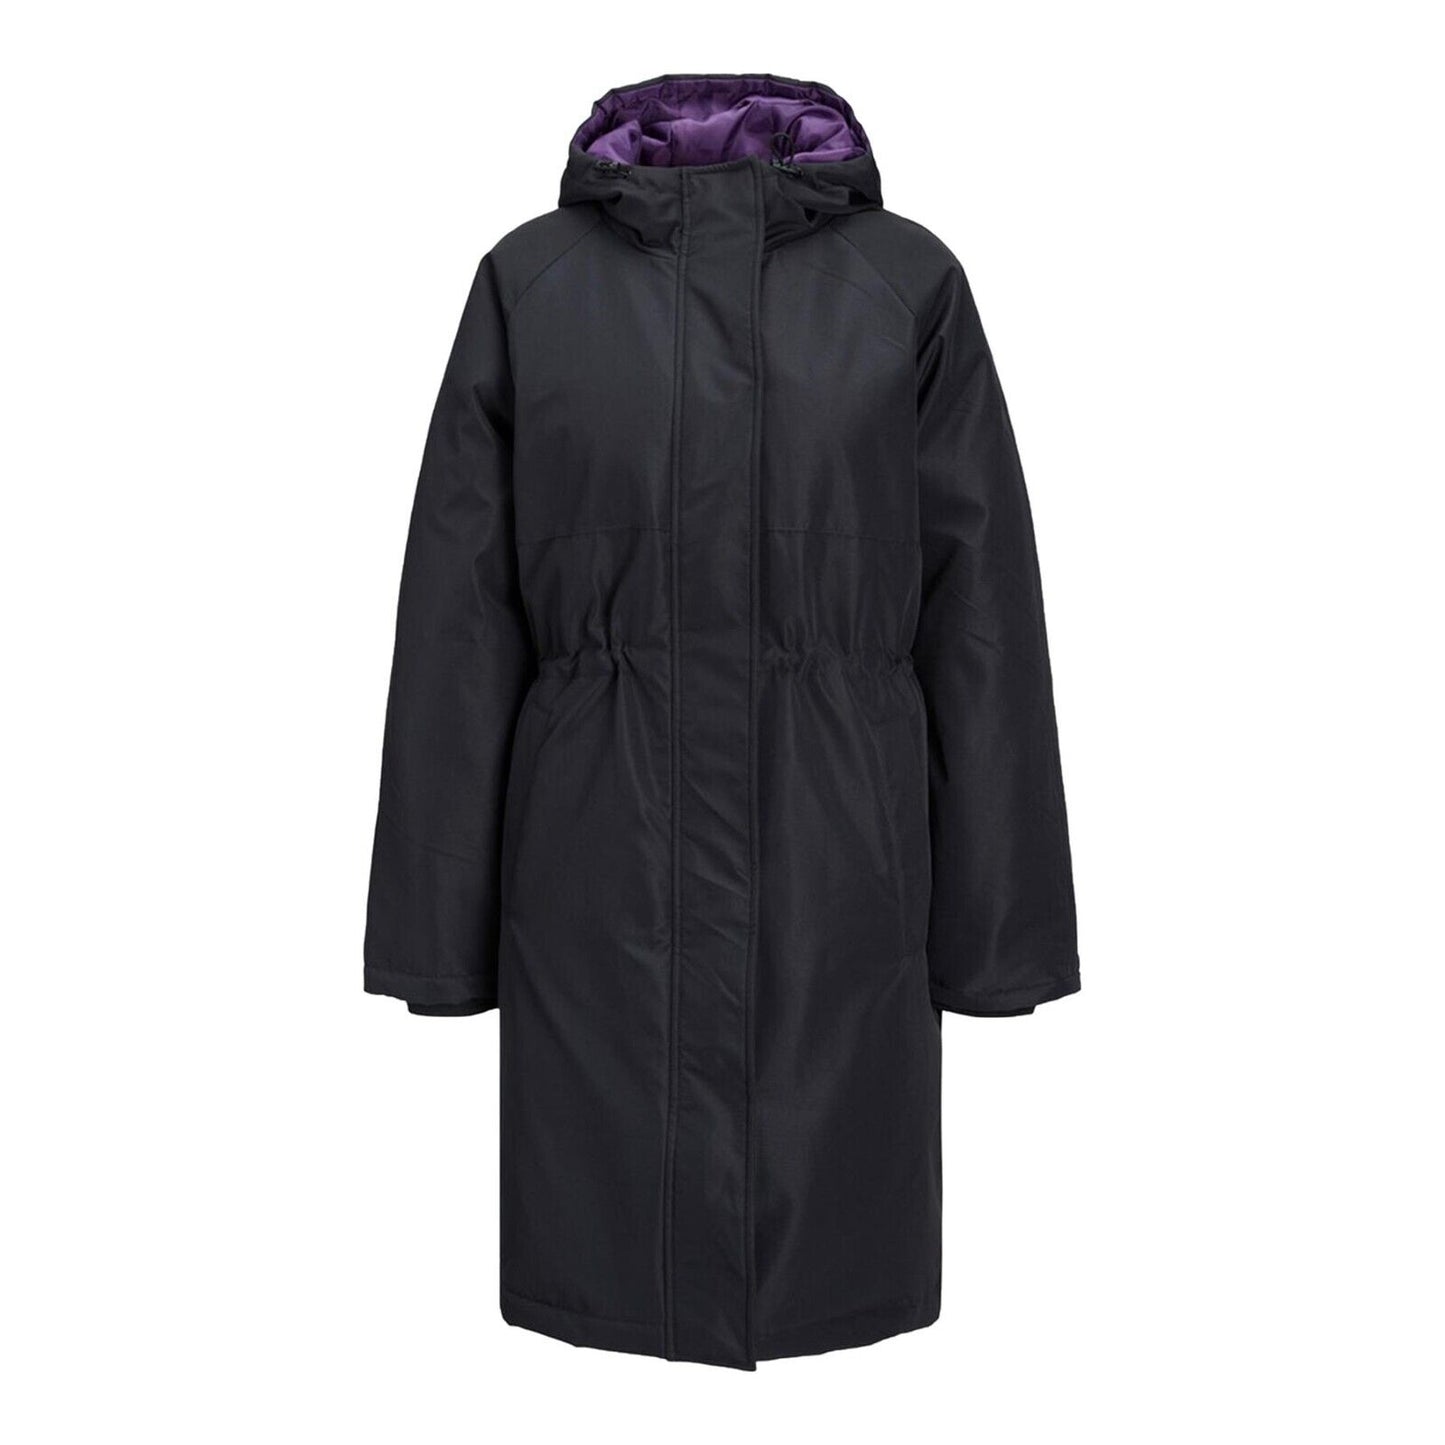 Womens Black Parka Coat Jack & Jones Hooded Zip Up Long Sleeve Jacket for Ladies